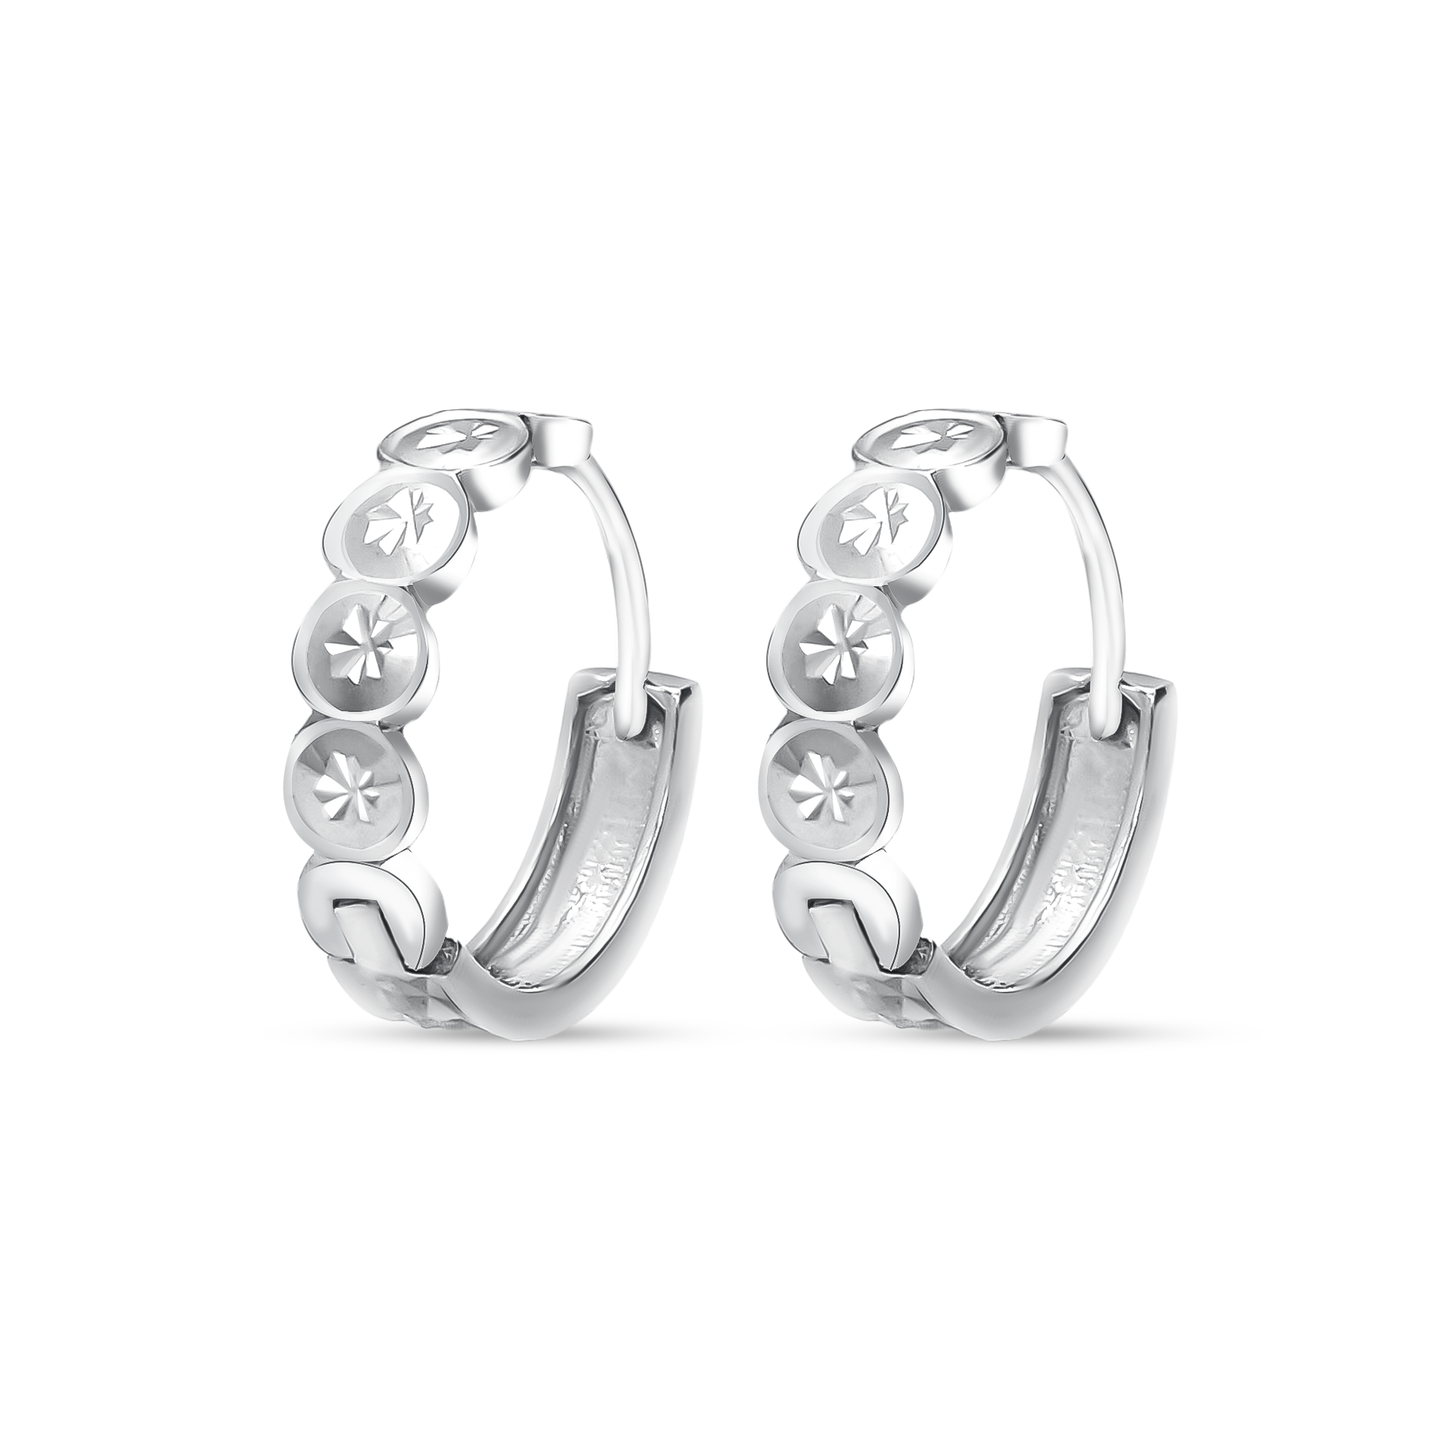 TAKA Jewellery Dolce 18K Gold Hoop Earrings